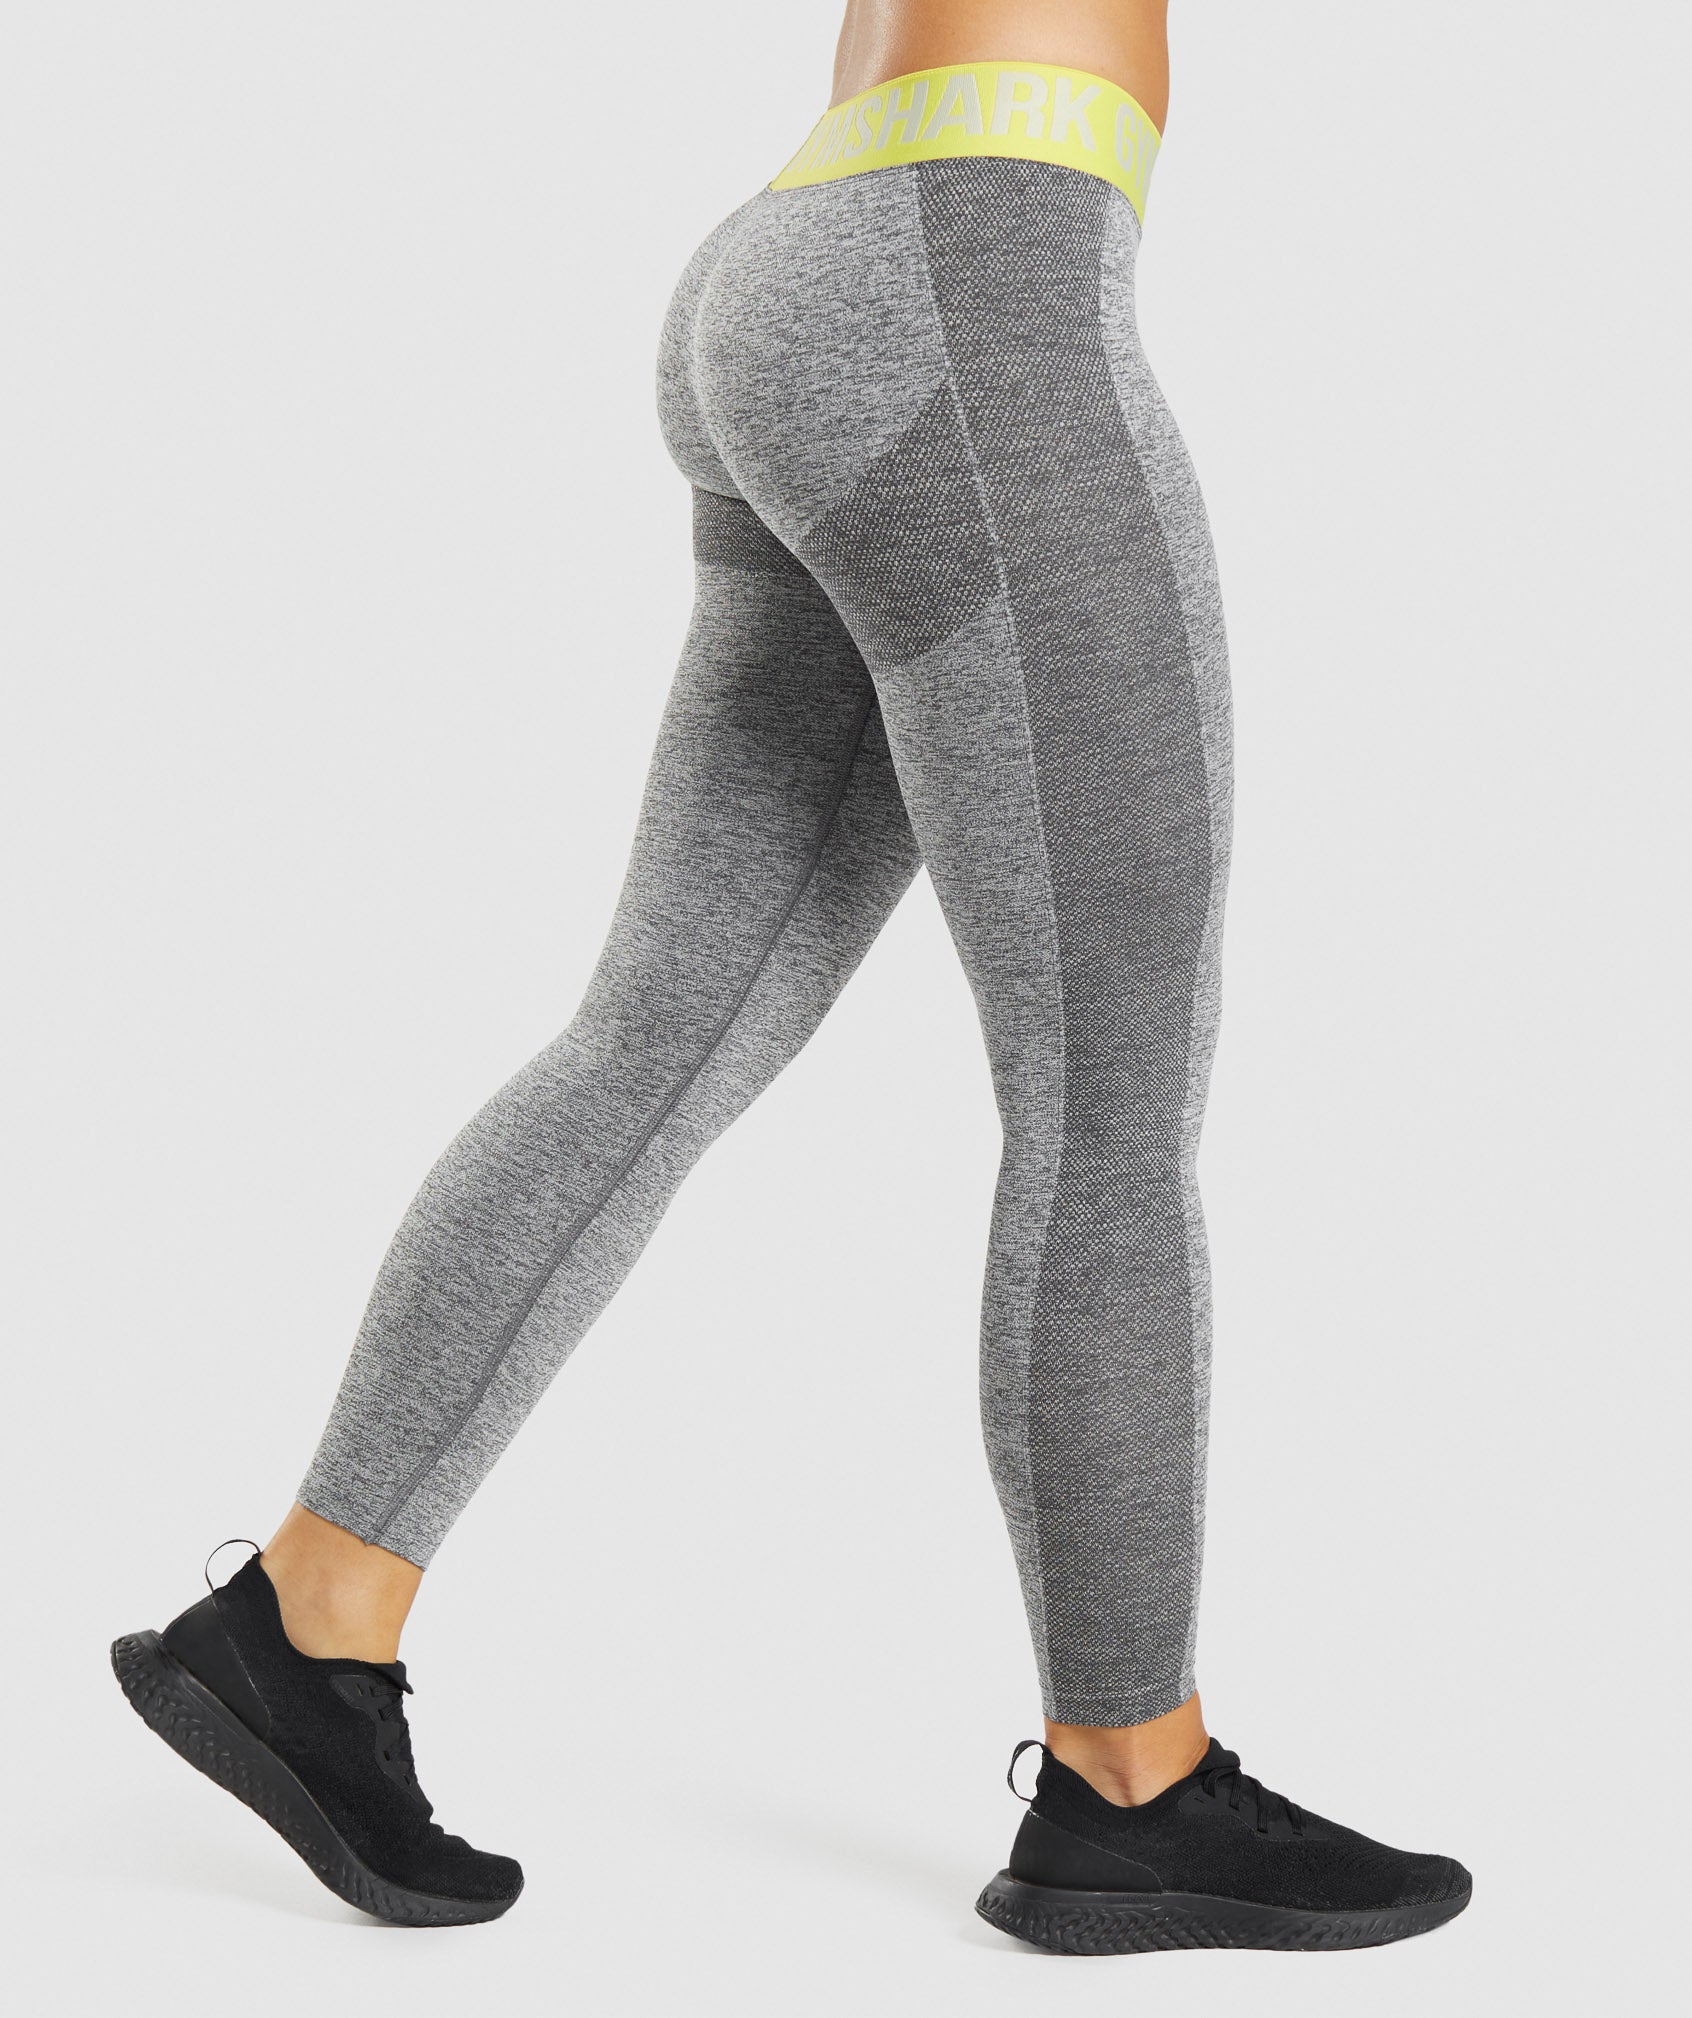 Gymshark Yellow Flex Seamless Workout Pants Leggings Women's Size L